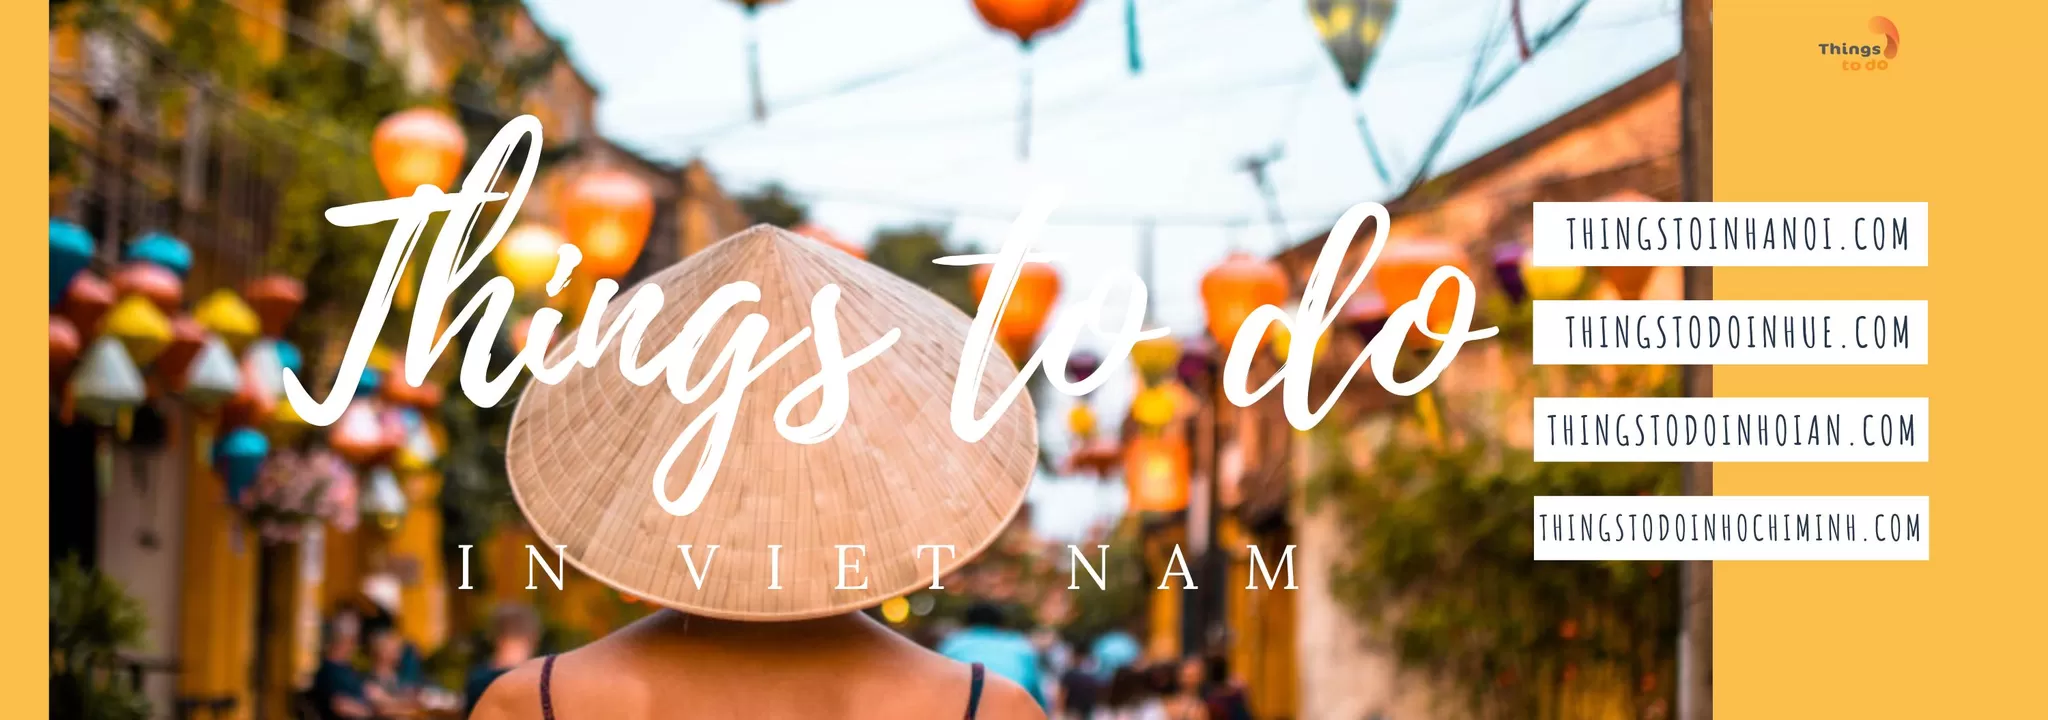 Cover Image of thingstodoinvietnam